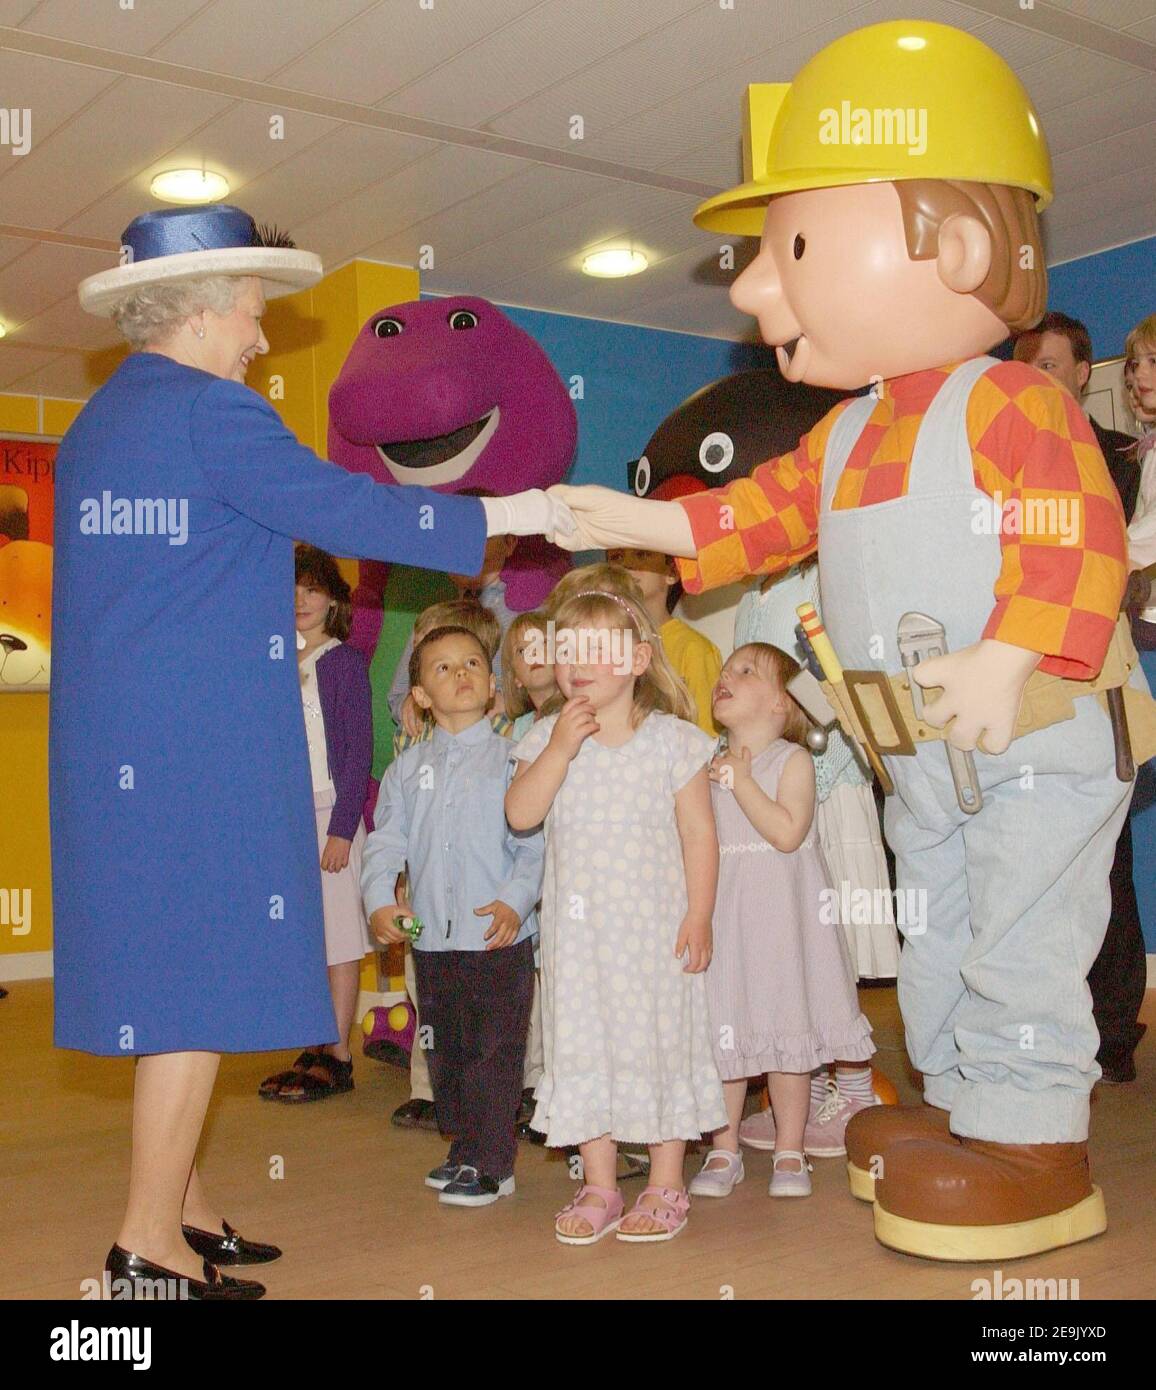 Foto del archivo fechada el 14/07/04 de la Reina Isabel II siendo recibida por 'Bob el Constructor' durante una visita a las oficinas de entretenimiento HIT en Londres. La Reina habrá reinado como monarca durante 69 años el sábado. Foto de stock